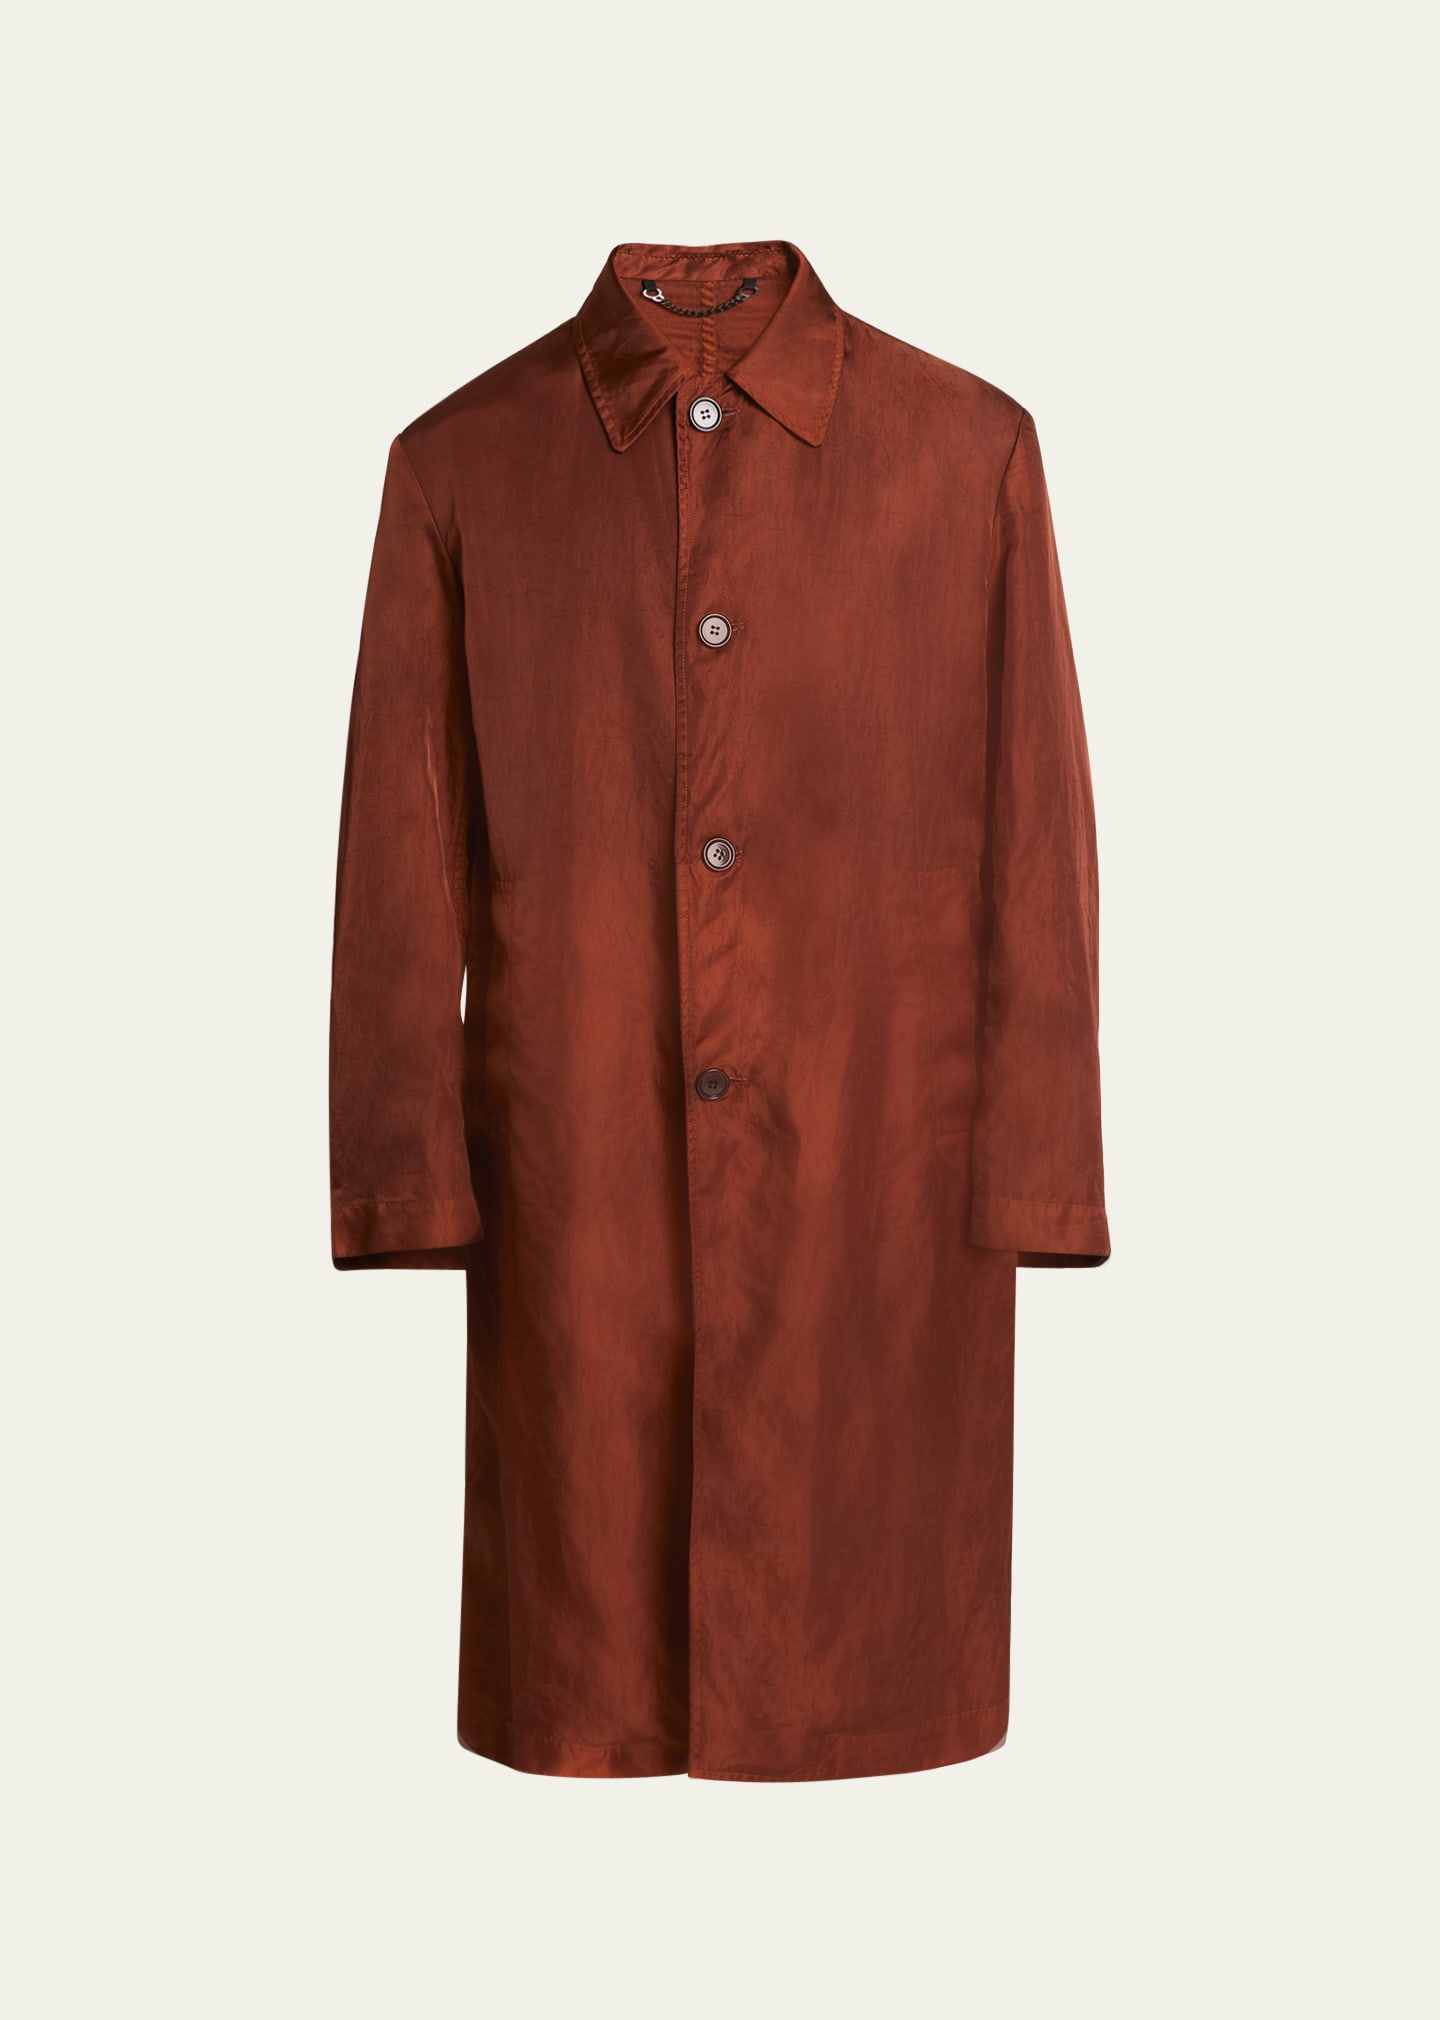 Dries Van Noten Men's Garment-dyed Gabardine Overcoat In 701 - Rust